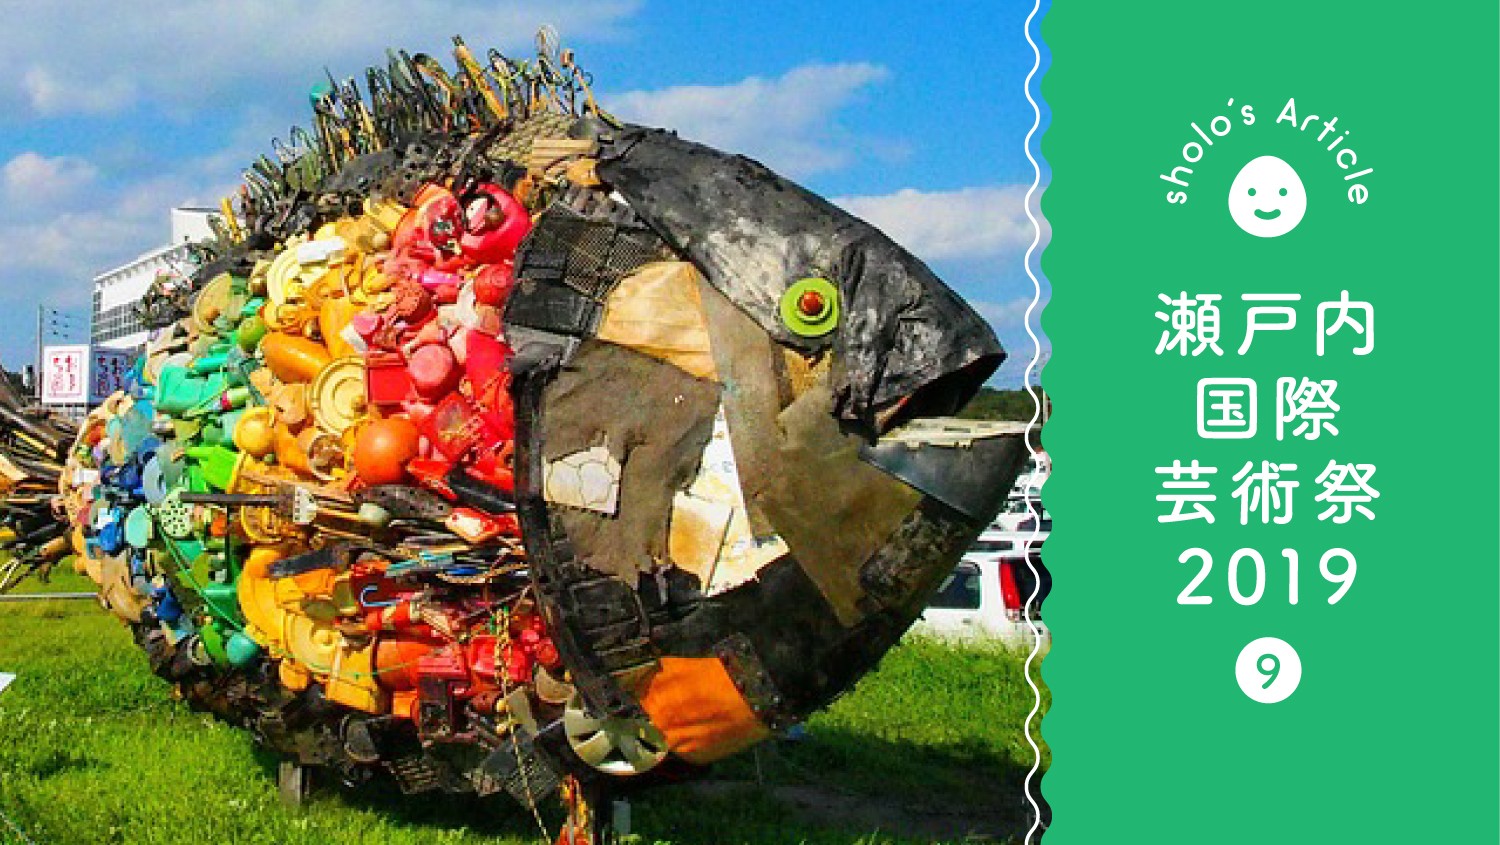 犬島 の特徴とアート作品 観光スポット完全ガイド 瀬戸内国際芸術祭19 Sholopono